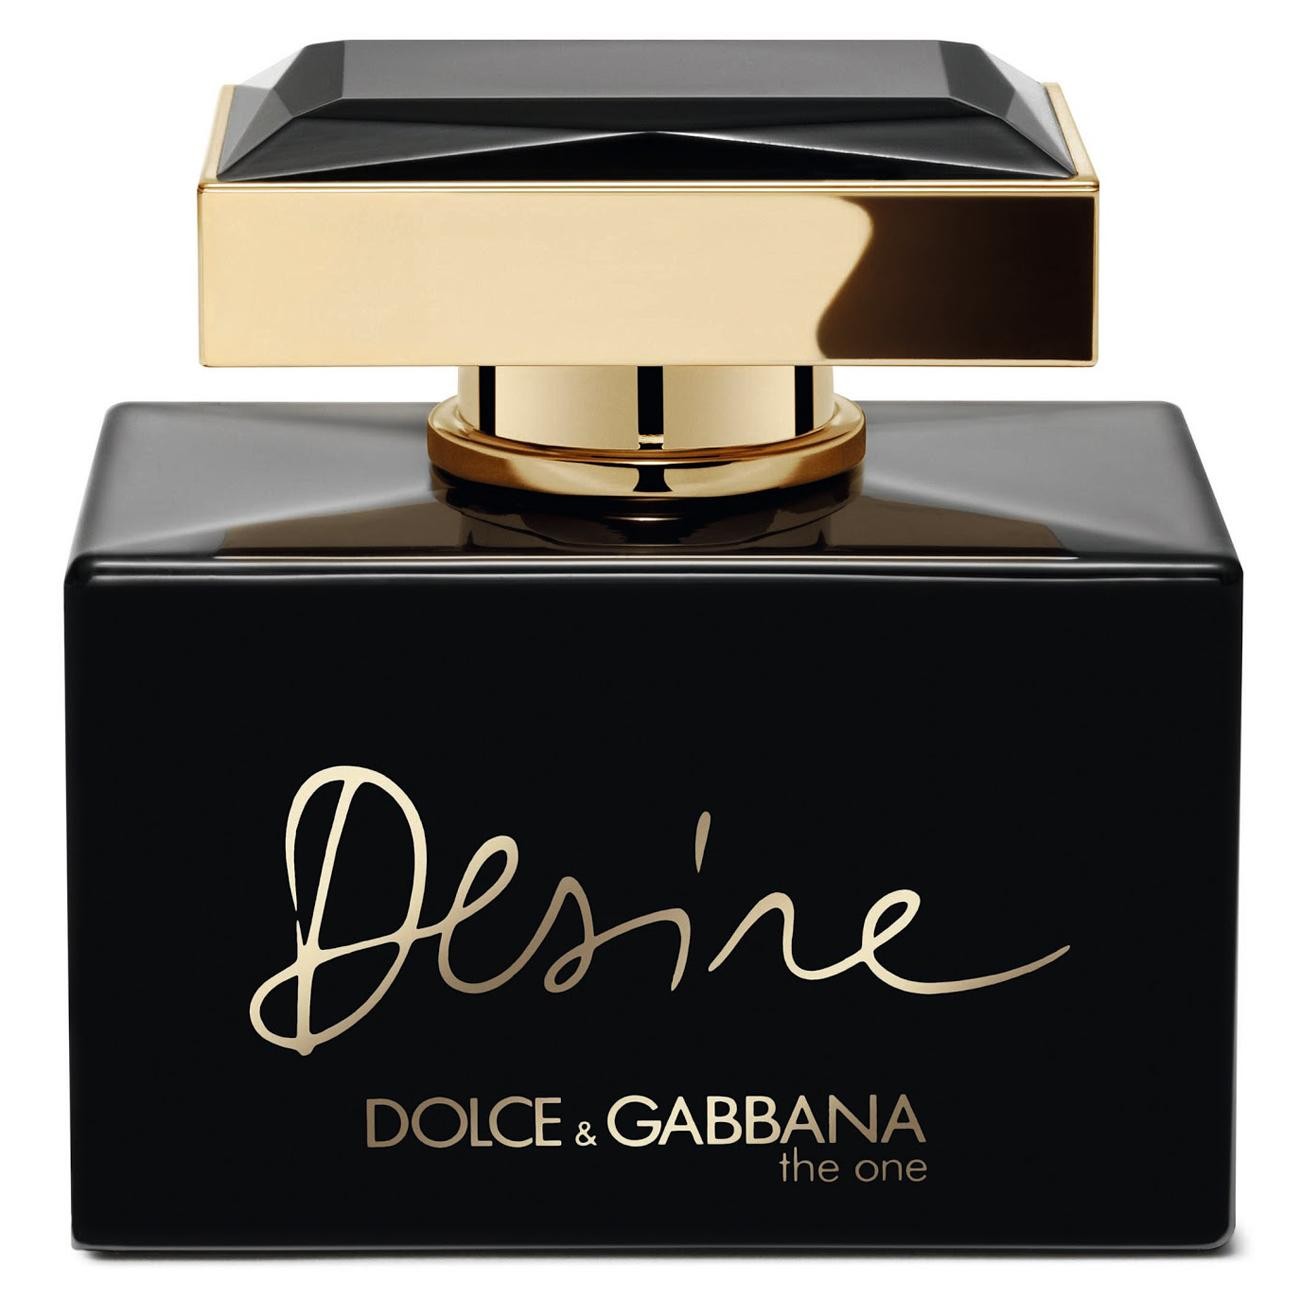 Desire dolce. Dolce Gabbana the one Desire 75. Dolce Gabbana духи the one Desire. Dolce Gabbana туалетная вода. Дольче Габбана duxi.